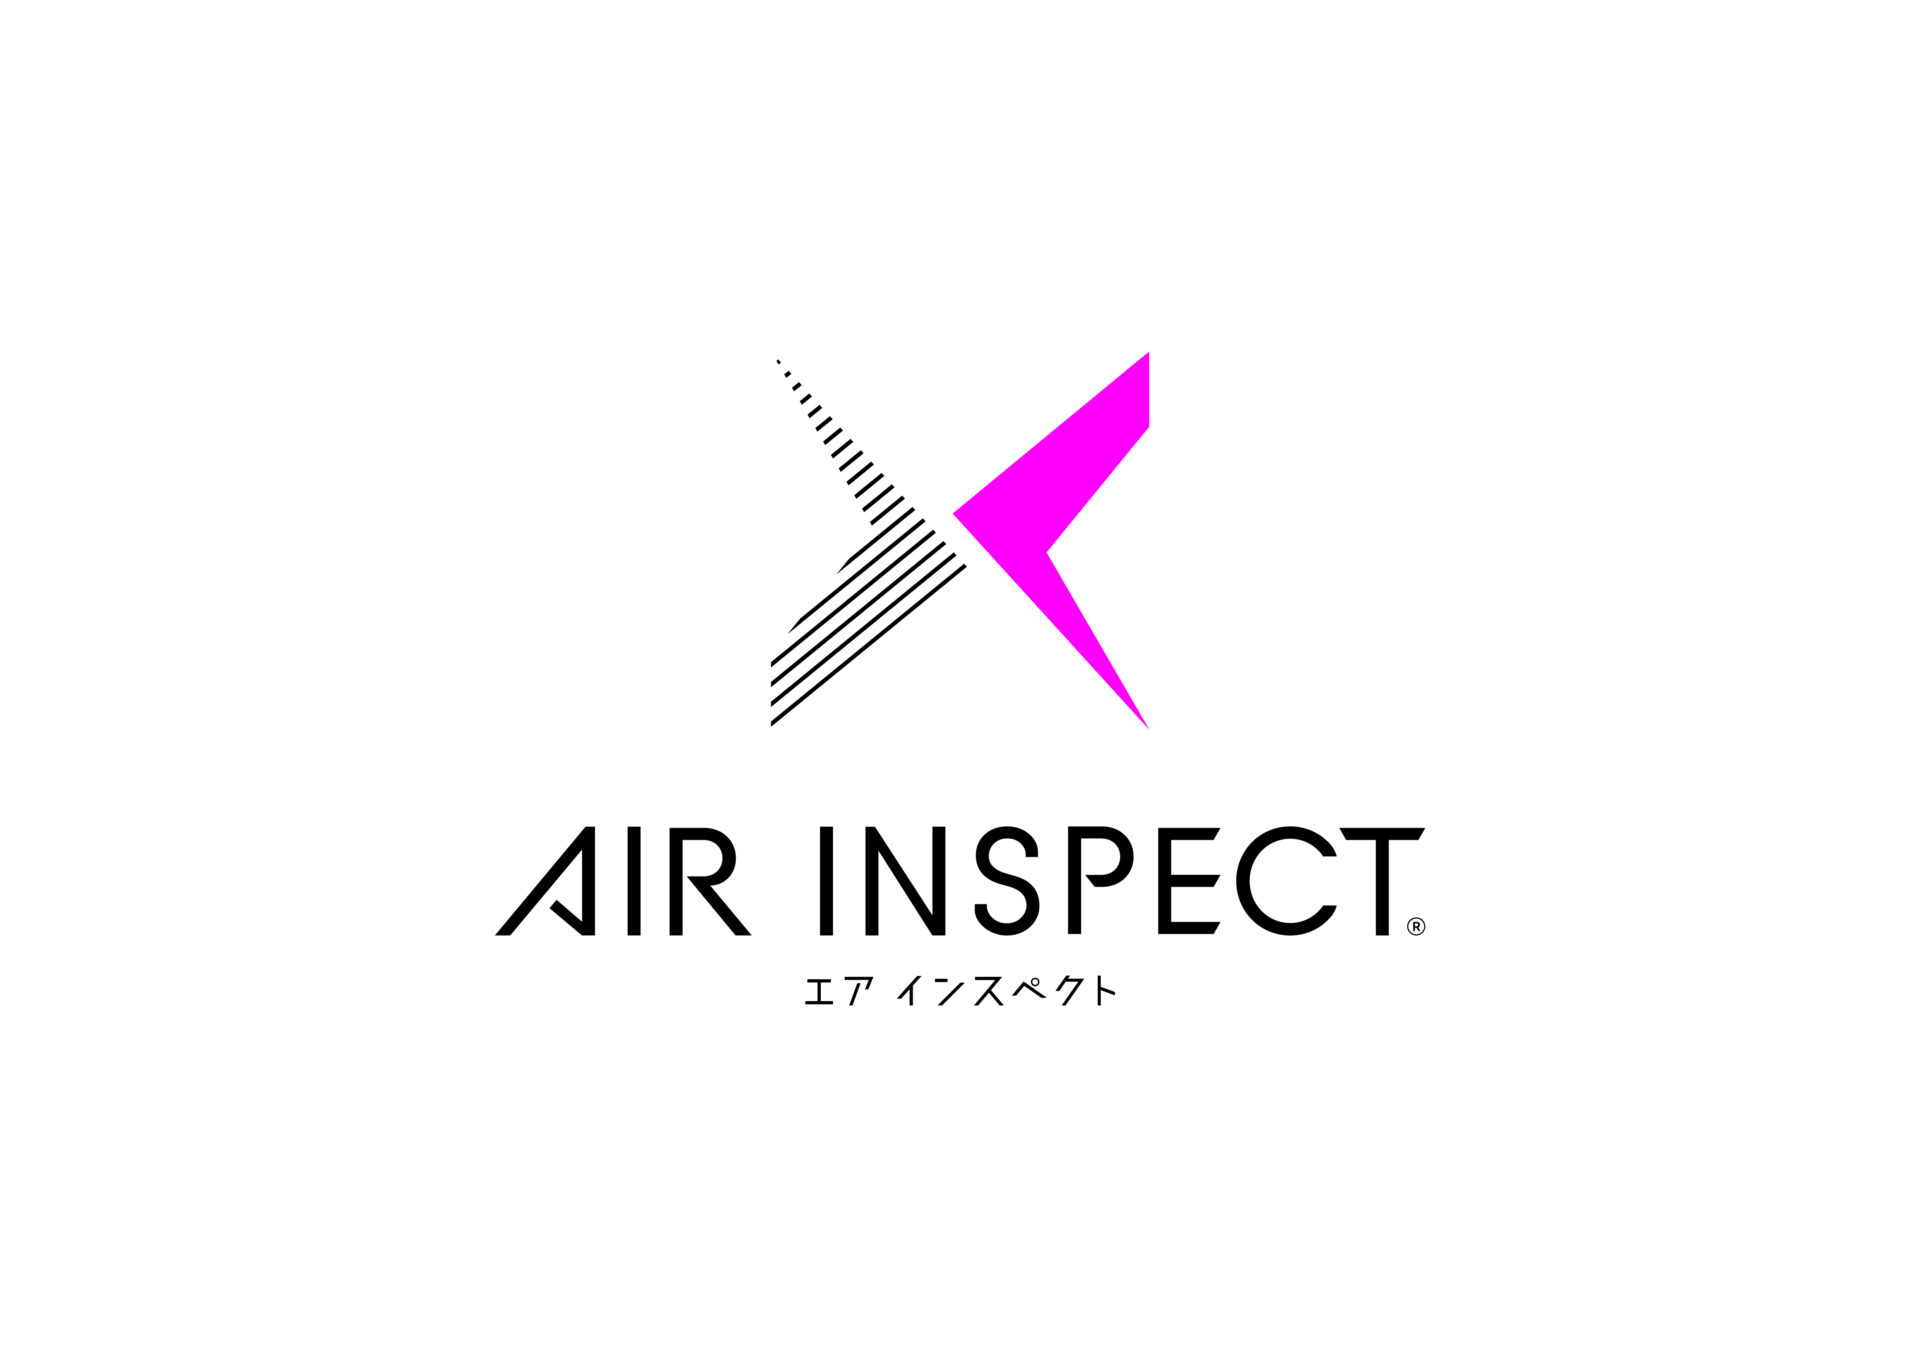 AIR INSPECT 商標登録のお知らせ